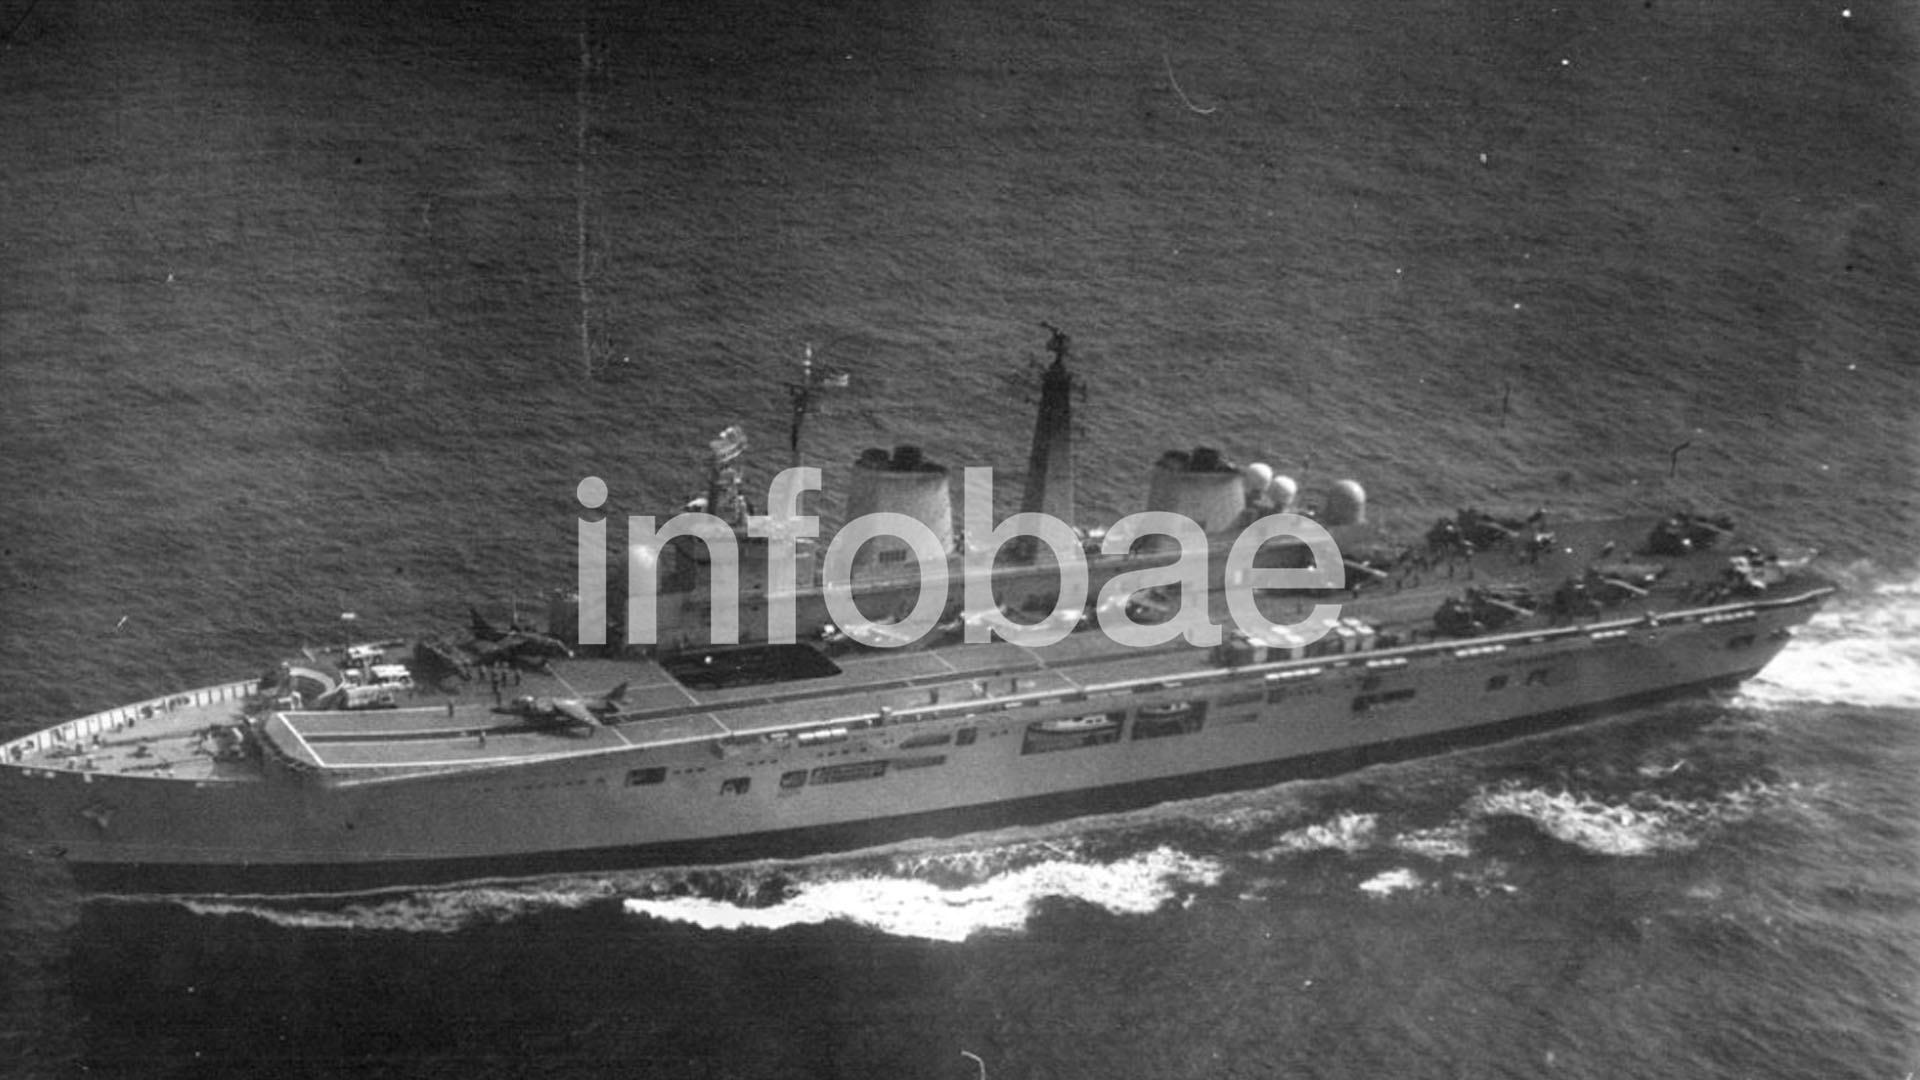 (El portaaviones británico HMS Invincible fotografiado por un avión TU-95RTs de la Aviación Naval de la Unión Soviética cuando se encontraba regresando de Malvinas)